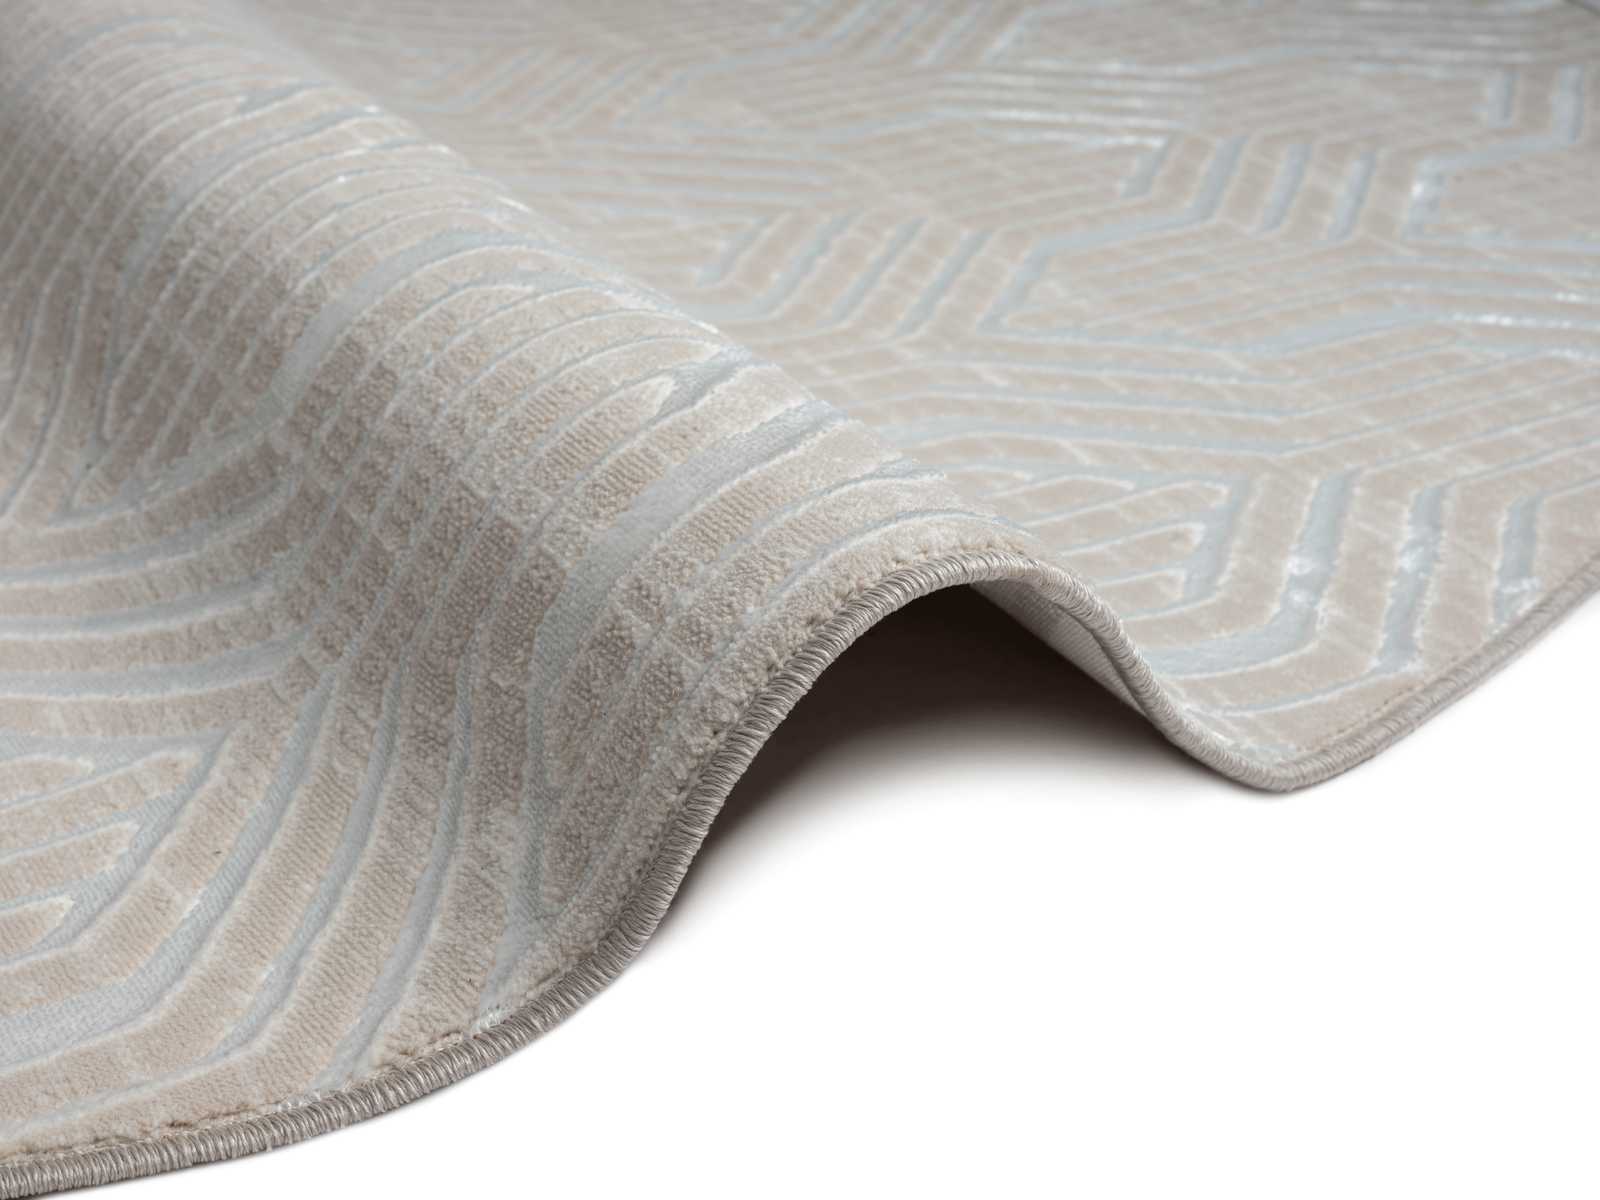             Soft pile carpet in cream - 200 x 140 cm
        